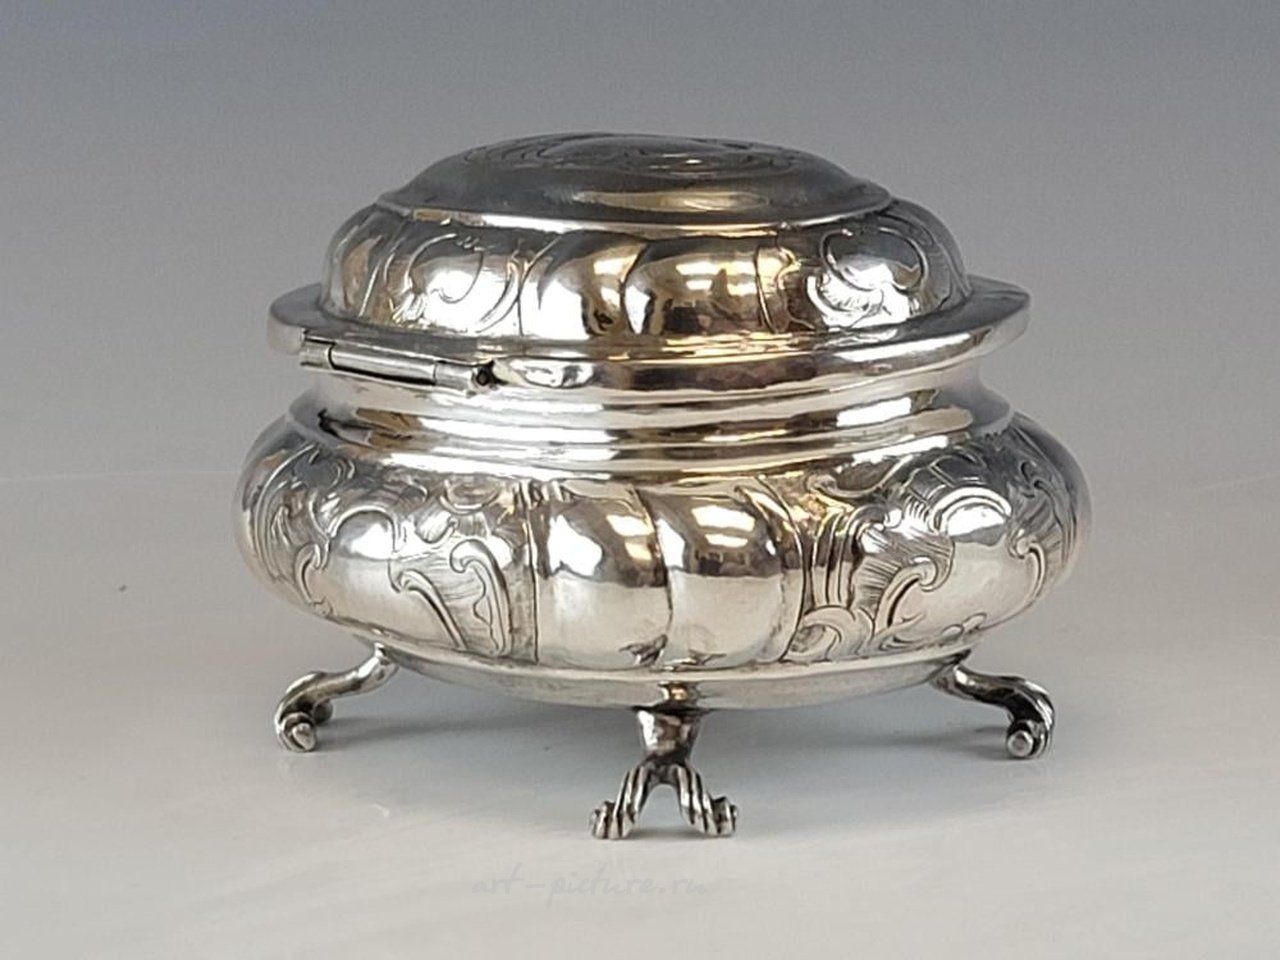 Русское серебро , Редкий антикварный русский серебряный ящик 18 века, 1766 год